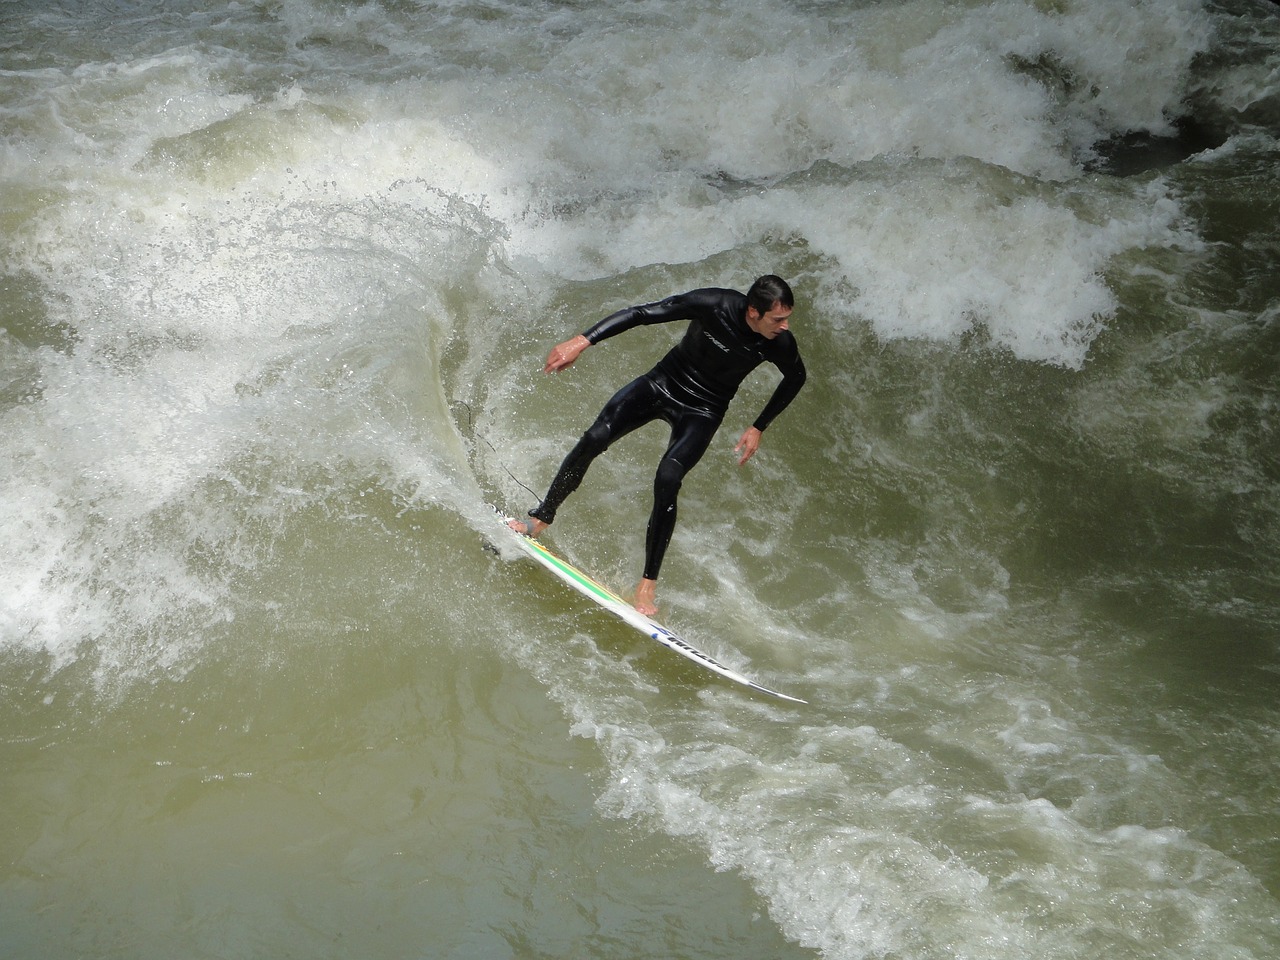 munich eisbach surfing free photo